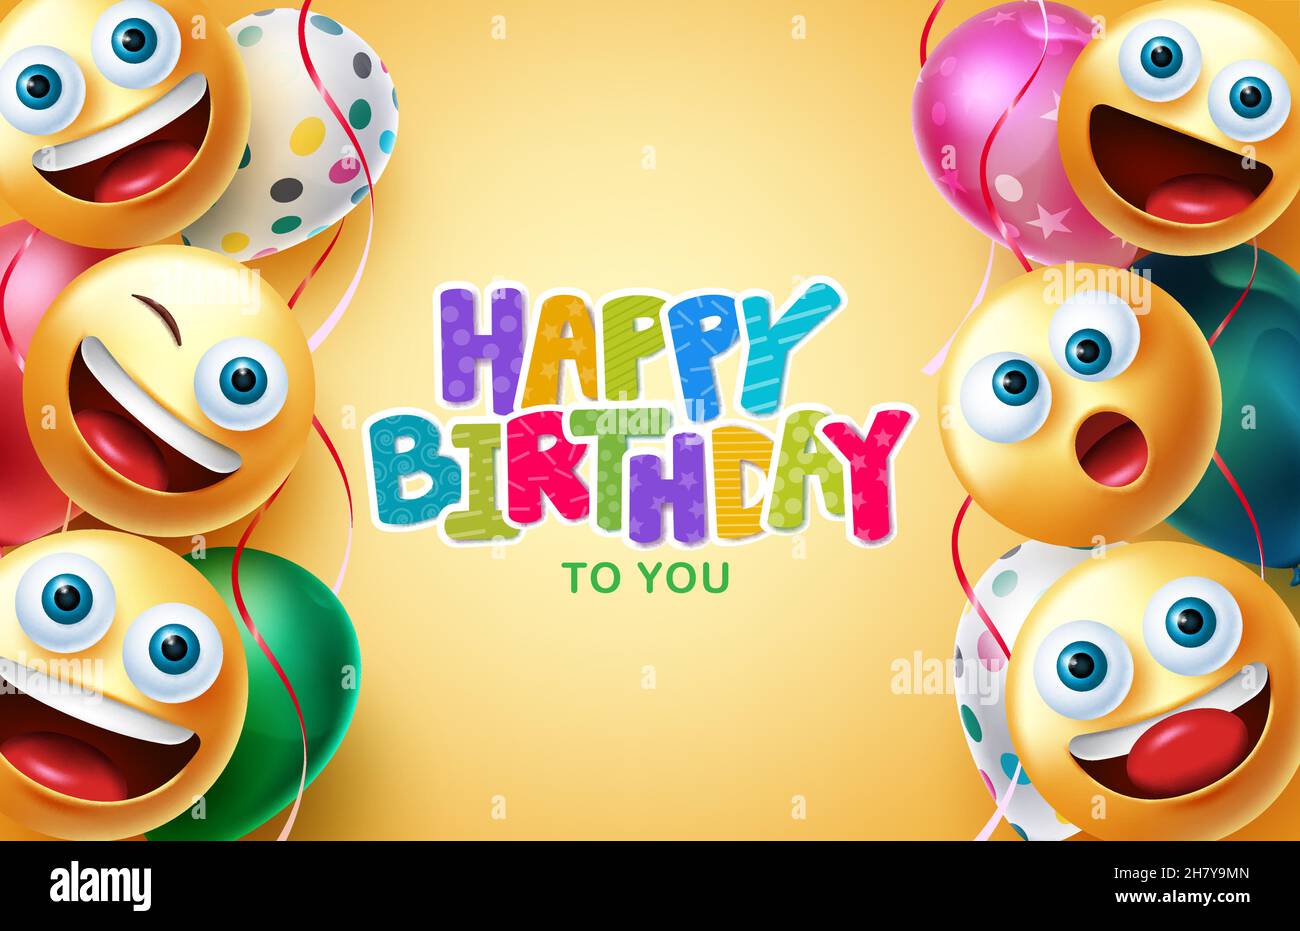 Geburtstag Gruß Vektor Hintergrund Design. Happy Birthday Text mit Smileys und Luftballons schwebenden Dekorationselementen für die Feier des Geburtstages. Stock Vektor